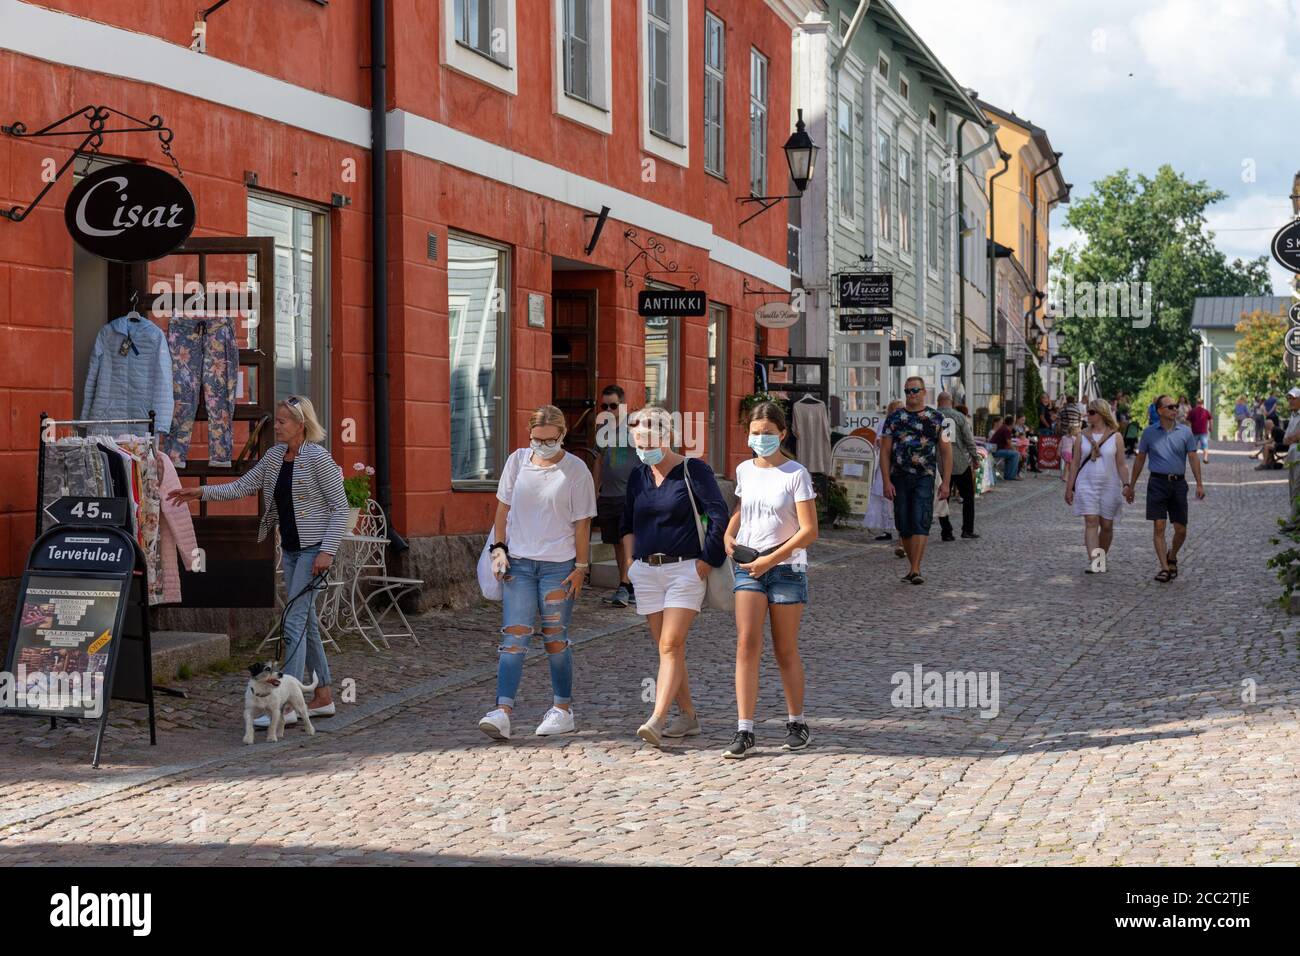 Gesichtsmaske tragen Touristen schlendern auf gepflasterten Straße der Altstadt in Porvoo, Finnland während COVID-19 Pandemie Stockfoto